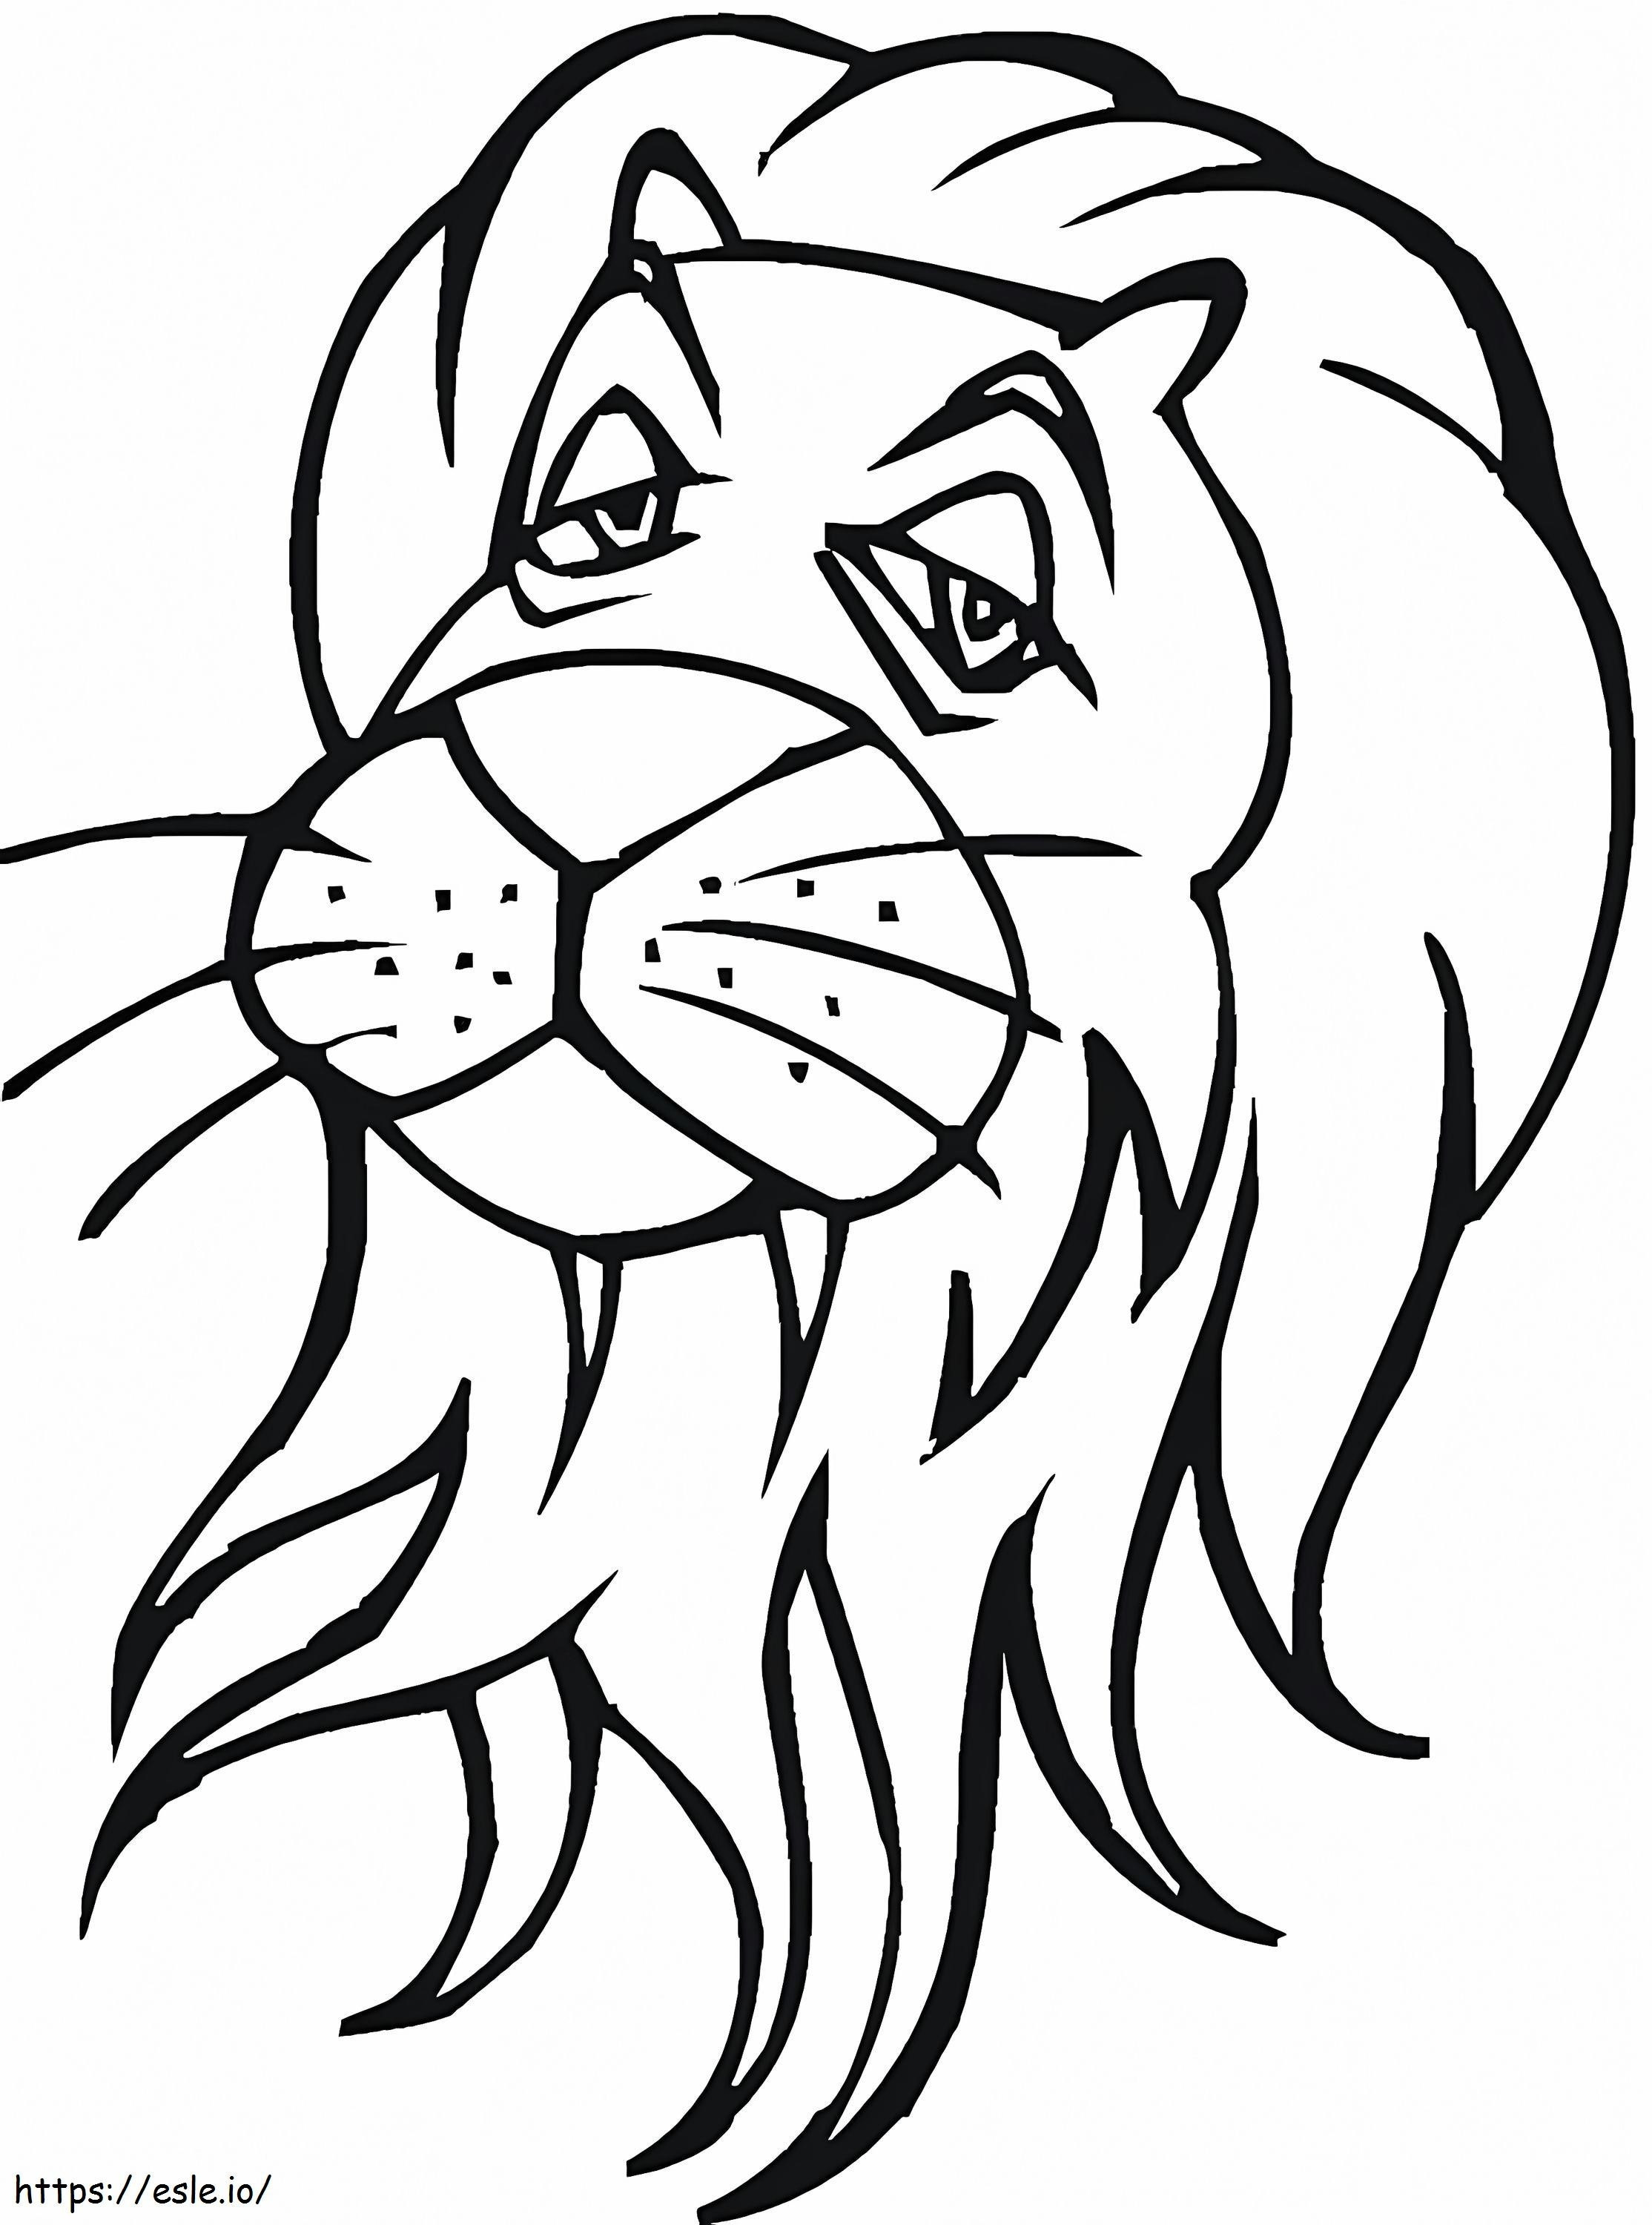 Testa di leone 1 da colorare